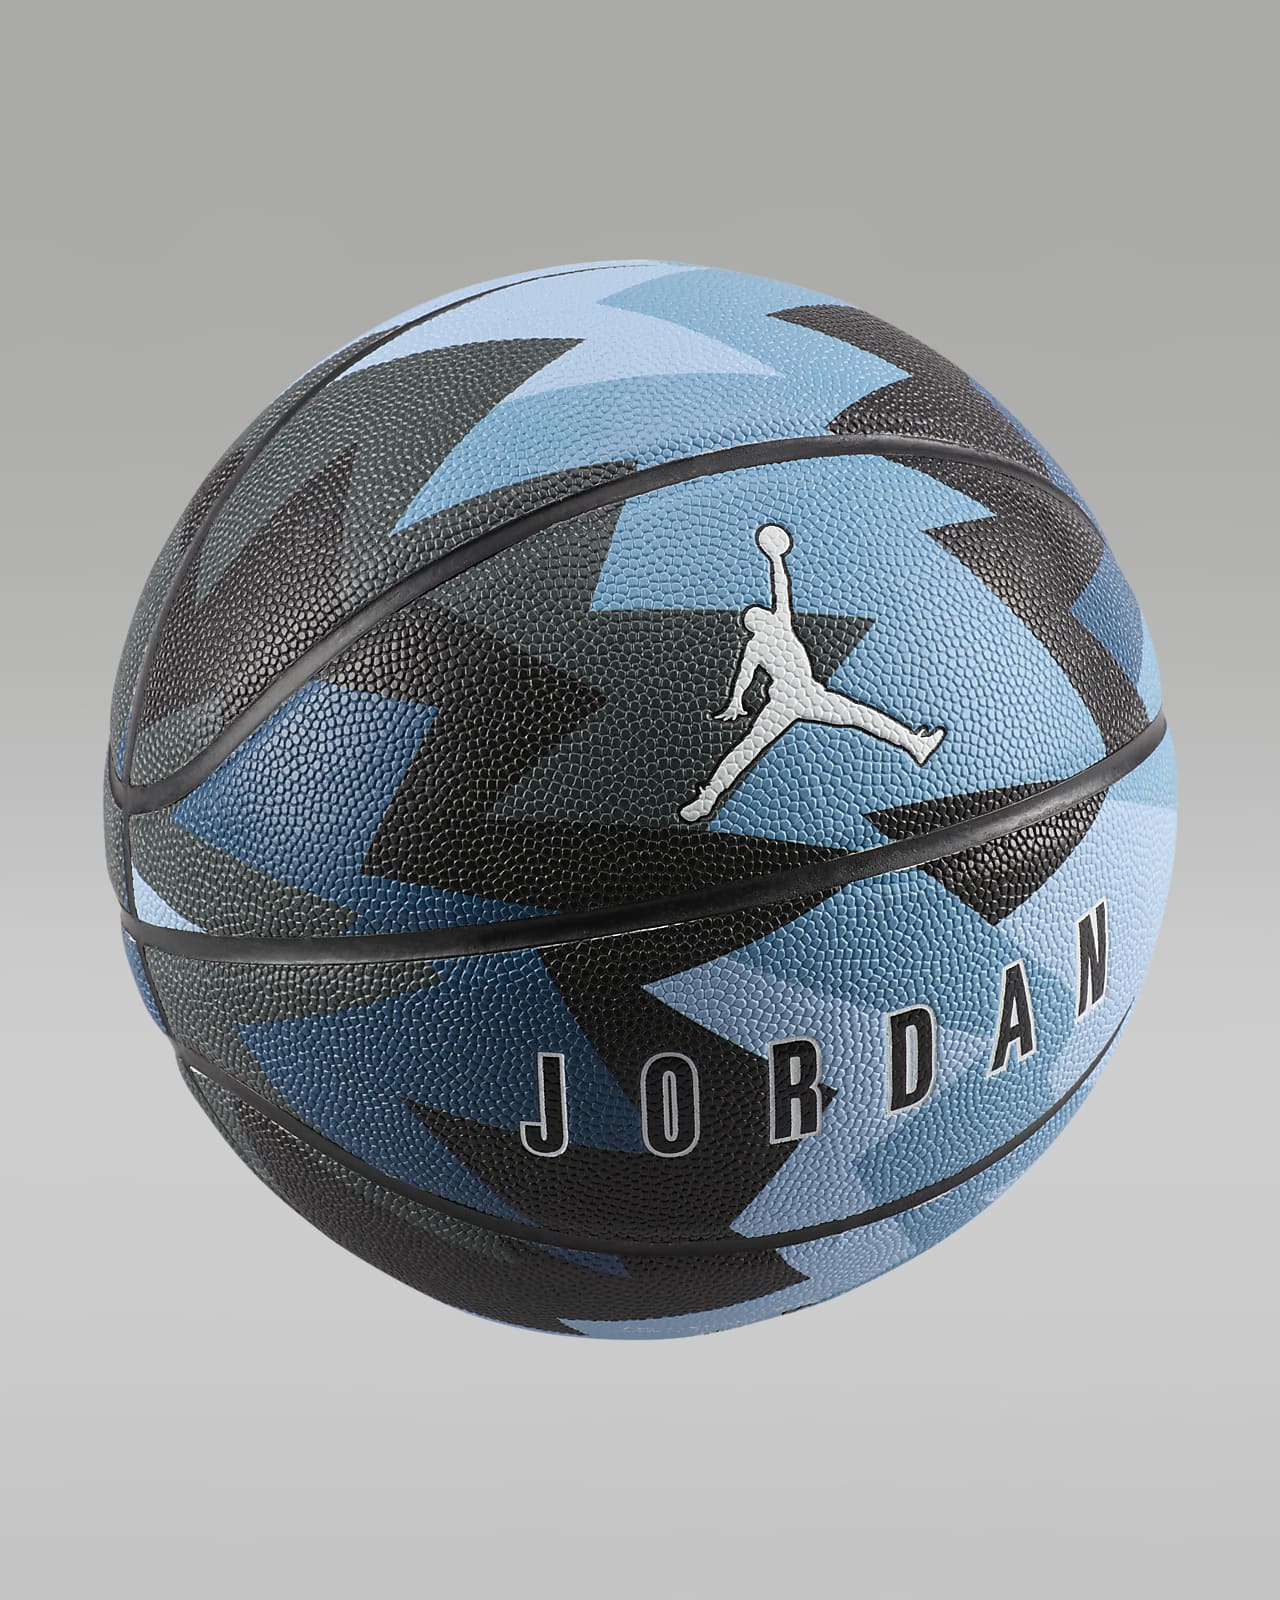 Basketbalový míč Jordan 8P (vyfouknutý)